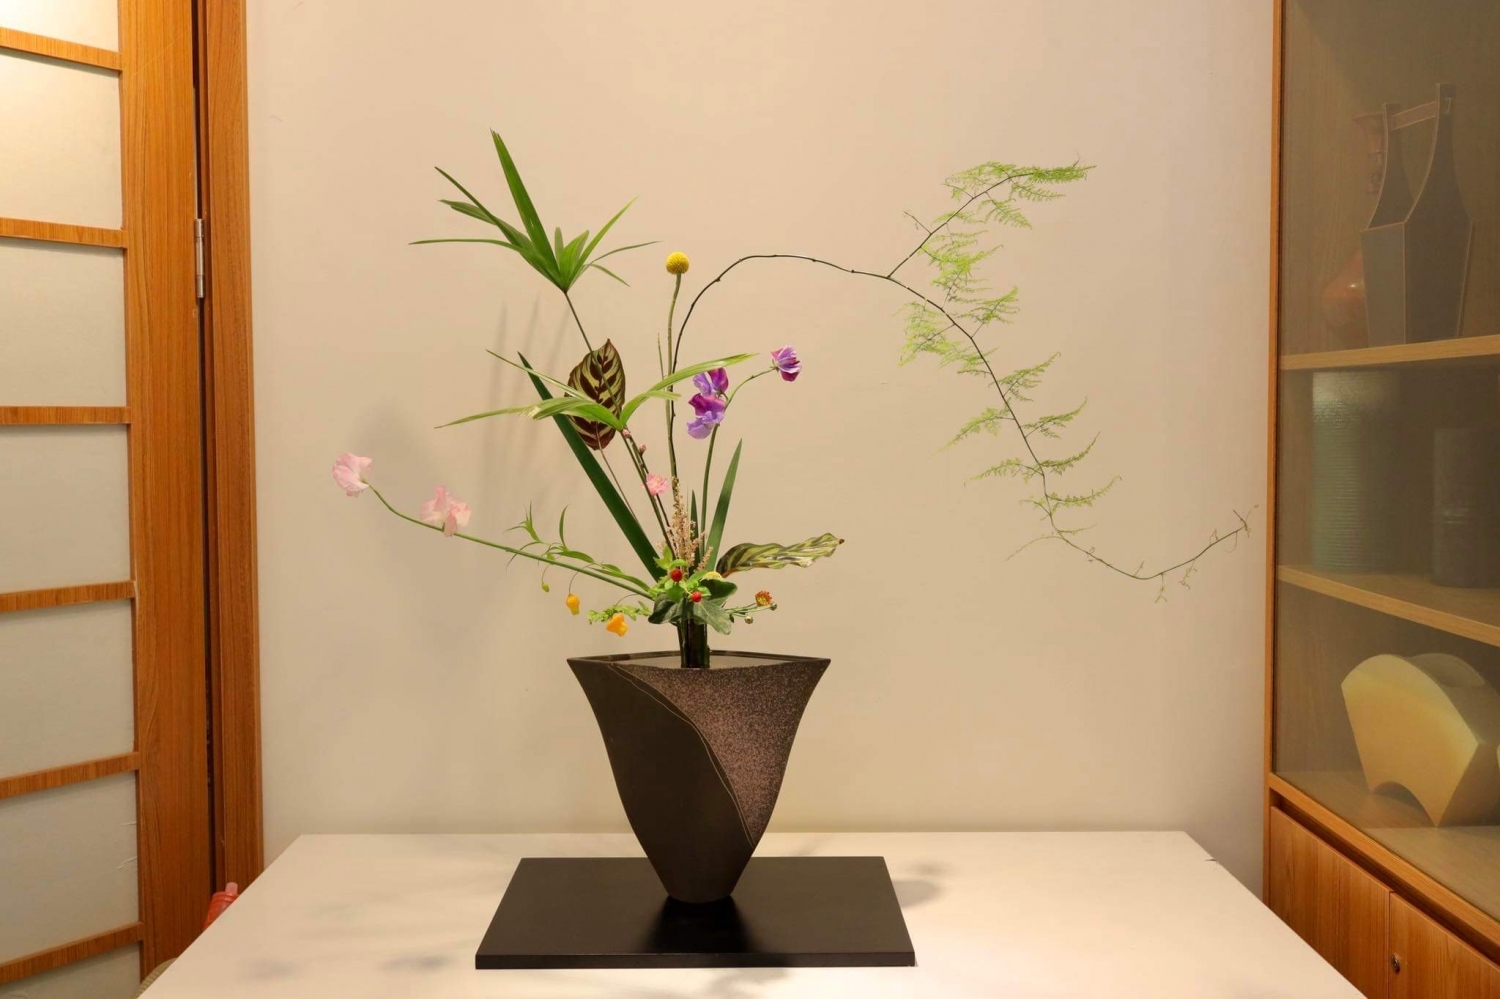 Triển lãm Ikebana Hà Nội lần thứ 5: Vẻ đẹp và sự hài hòa